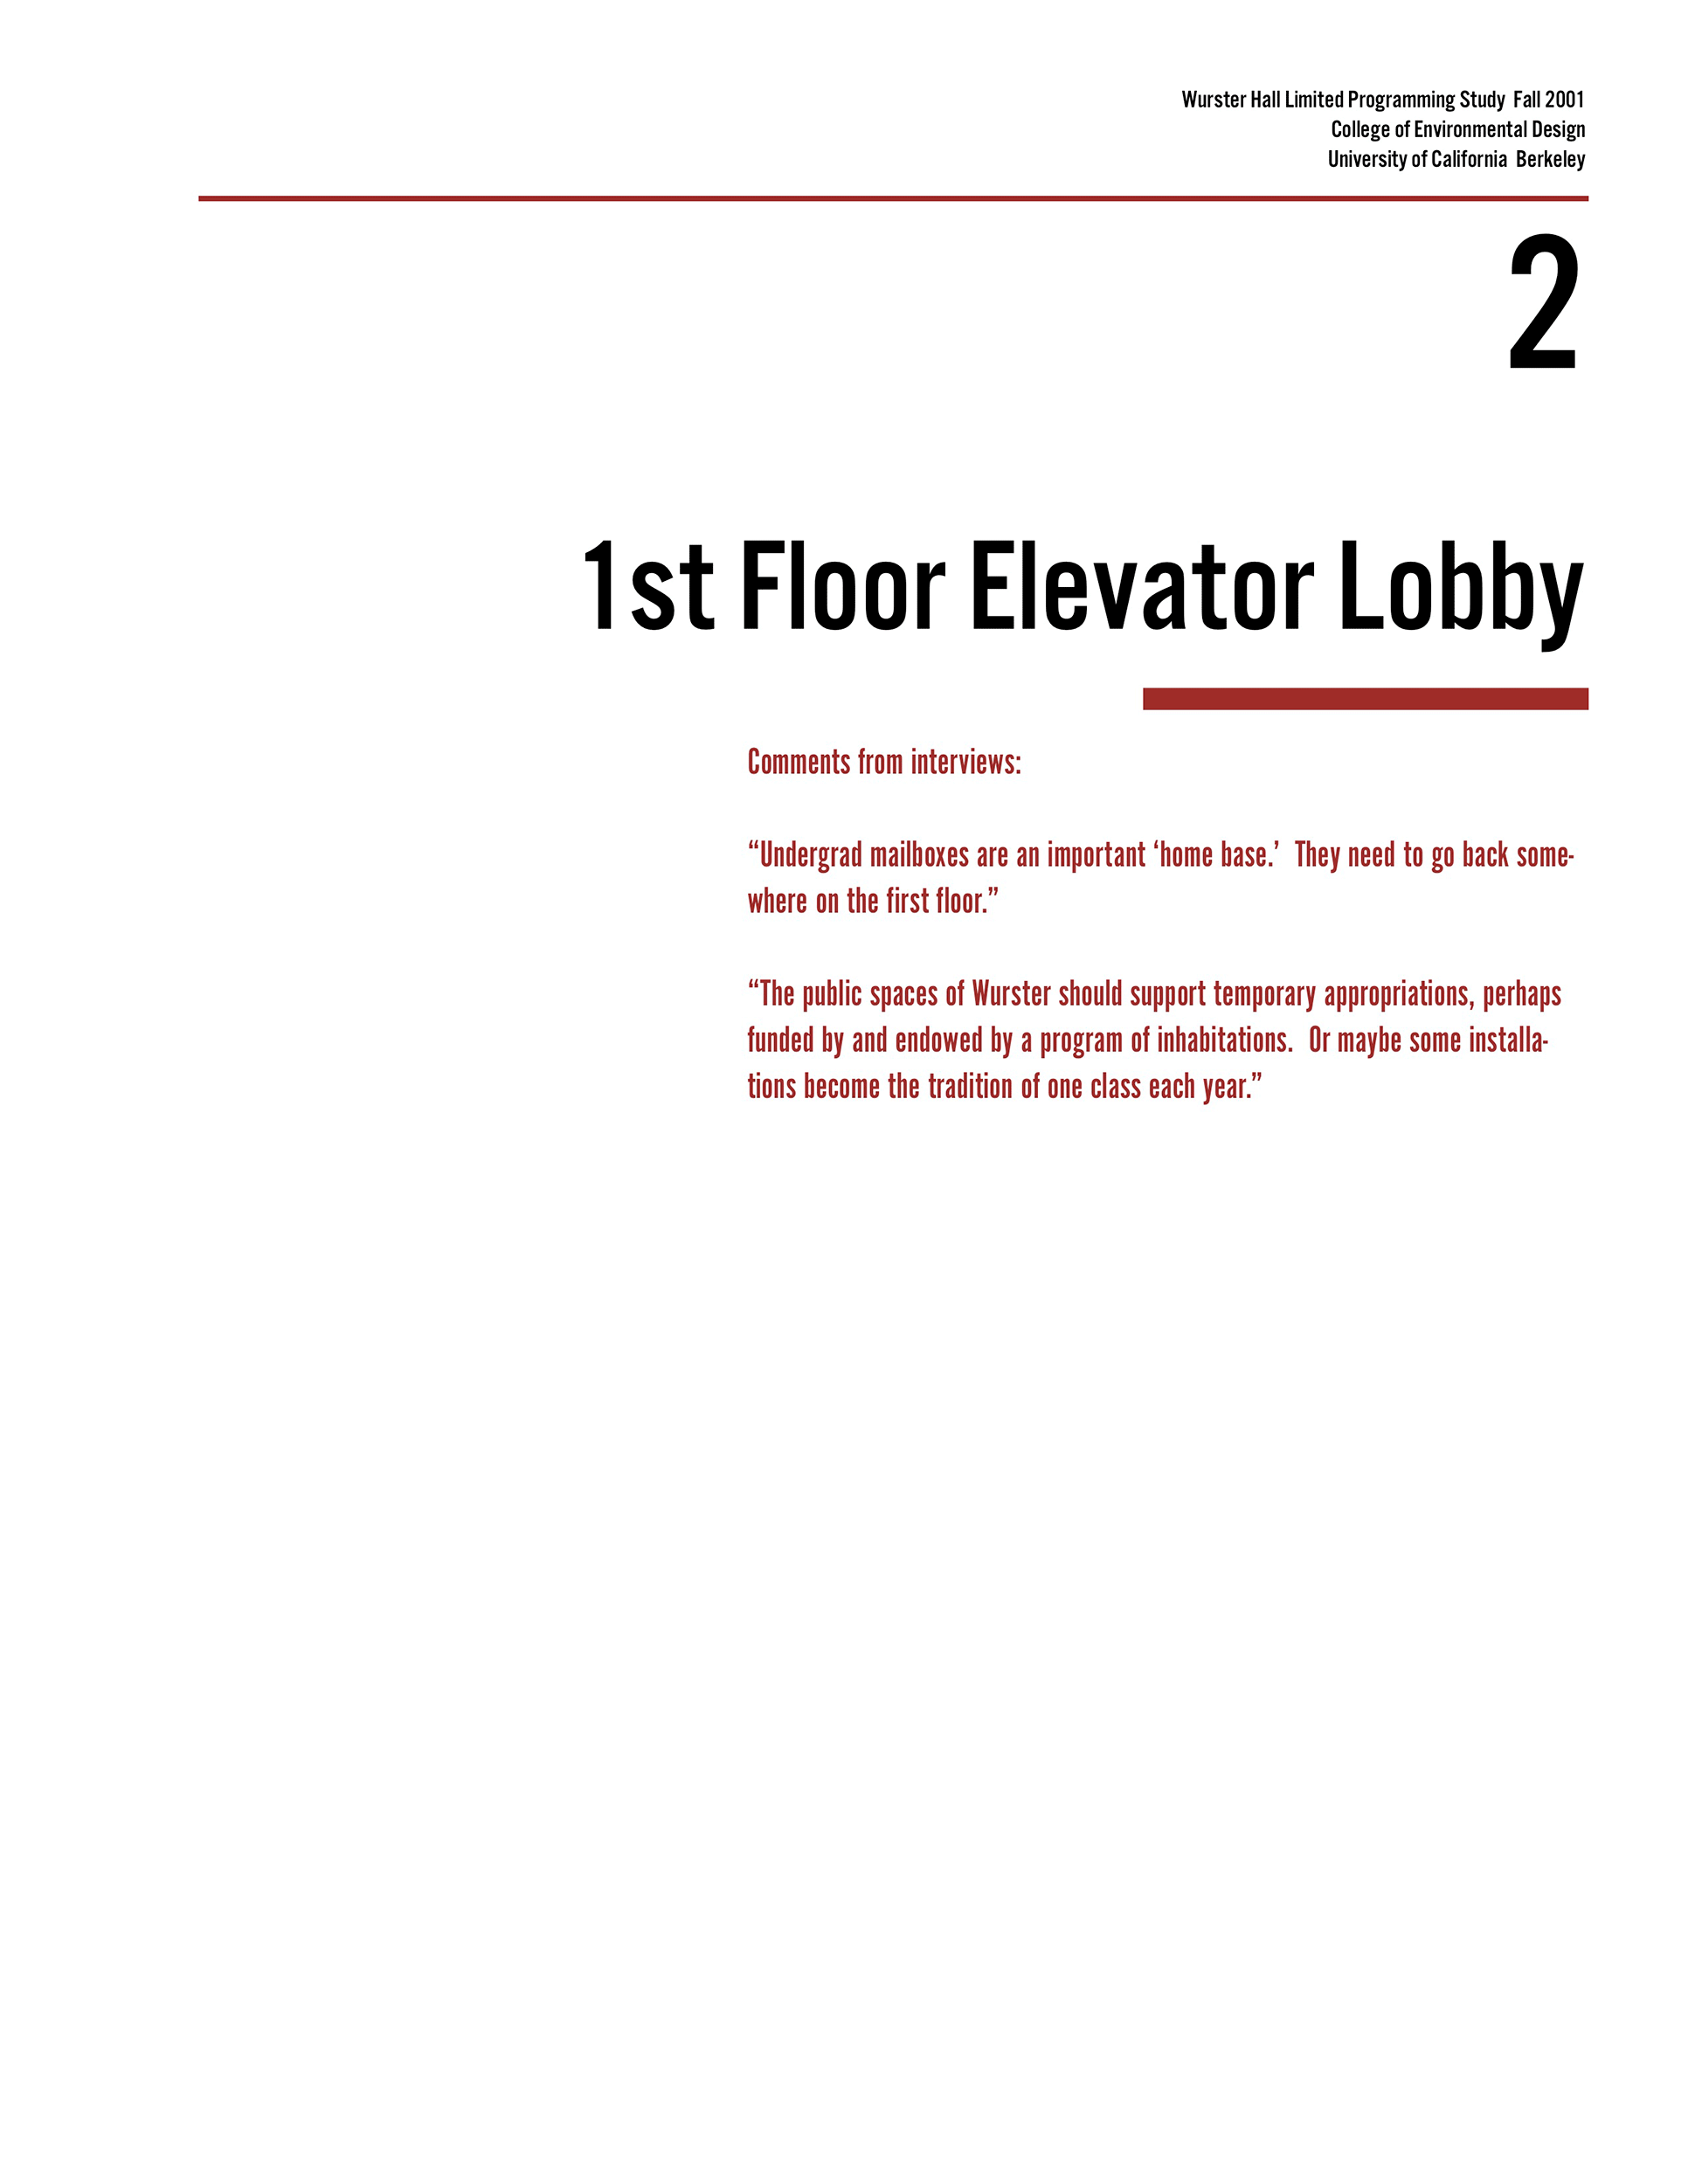 02-Elevator-Lobby-100D-(dragged)x.gif